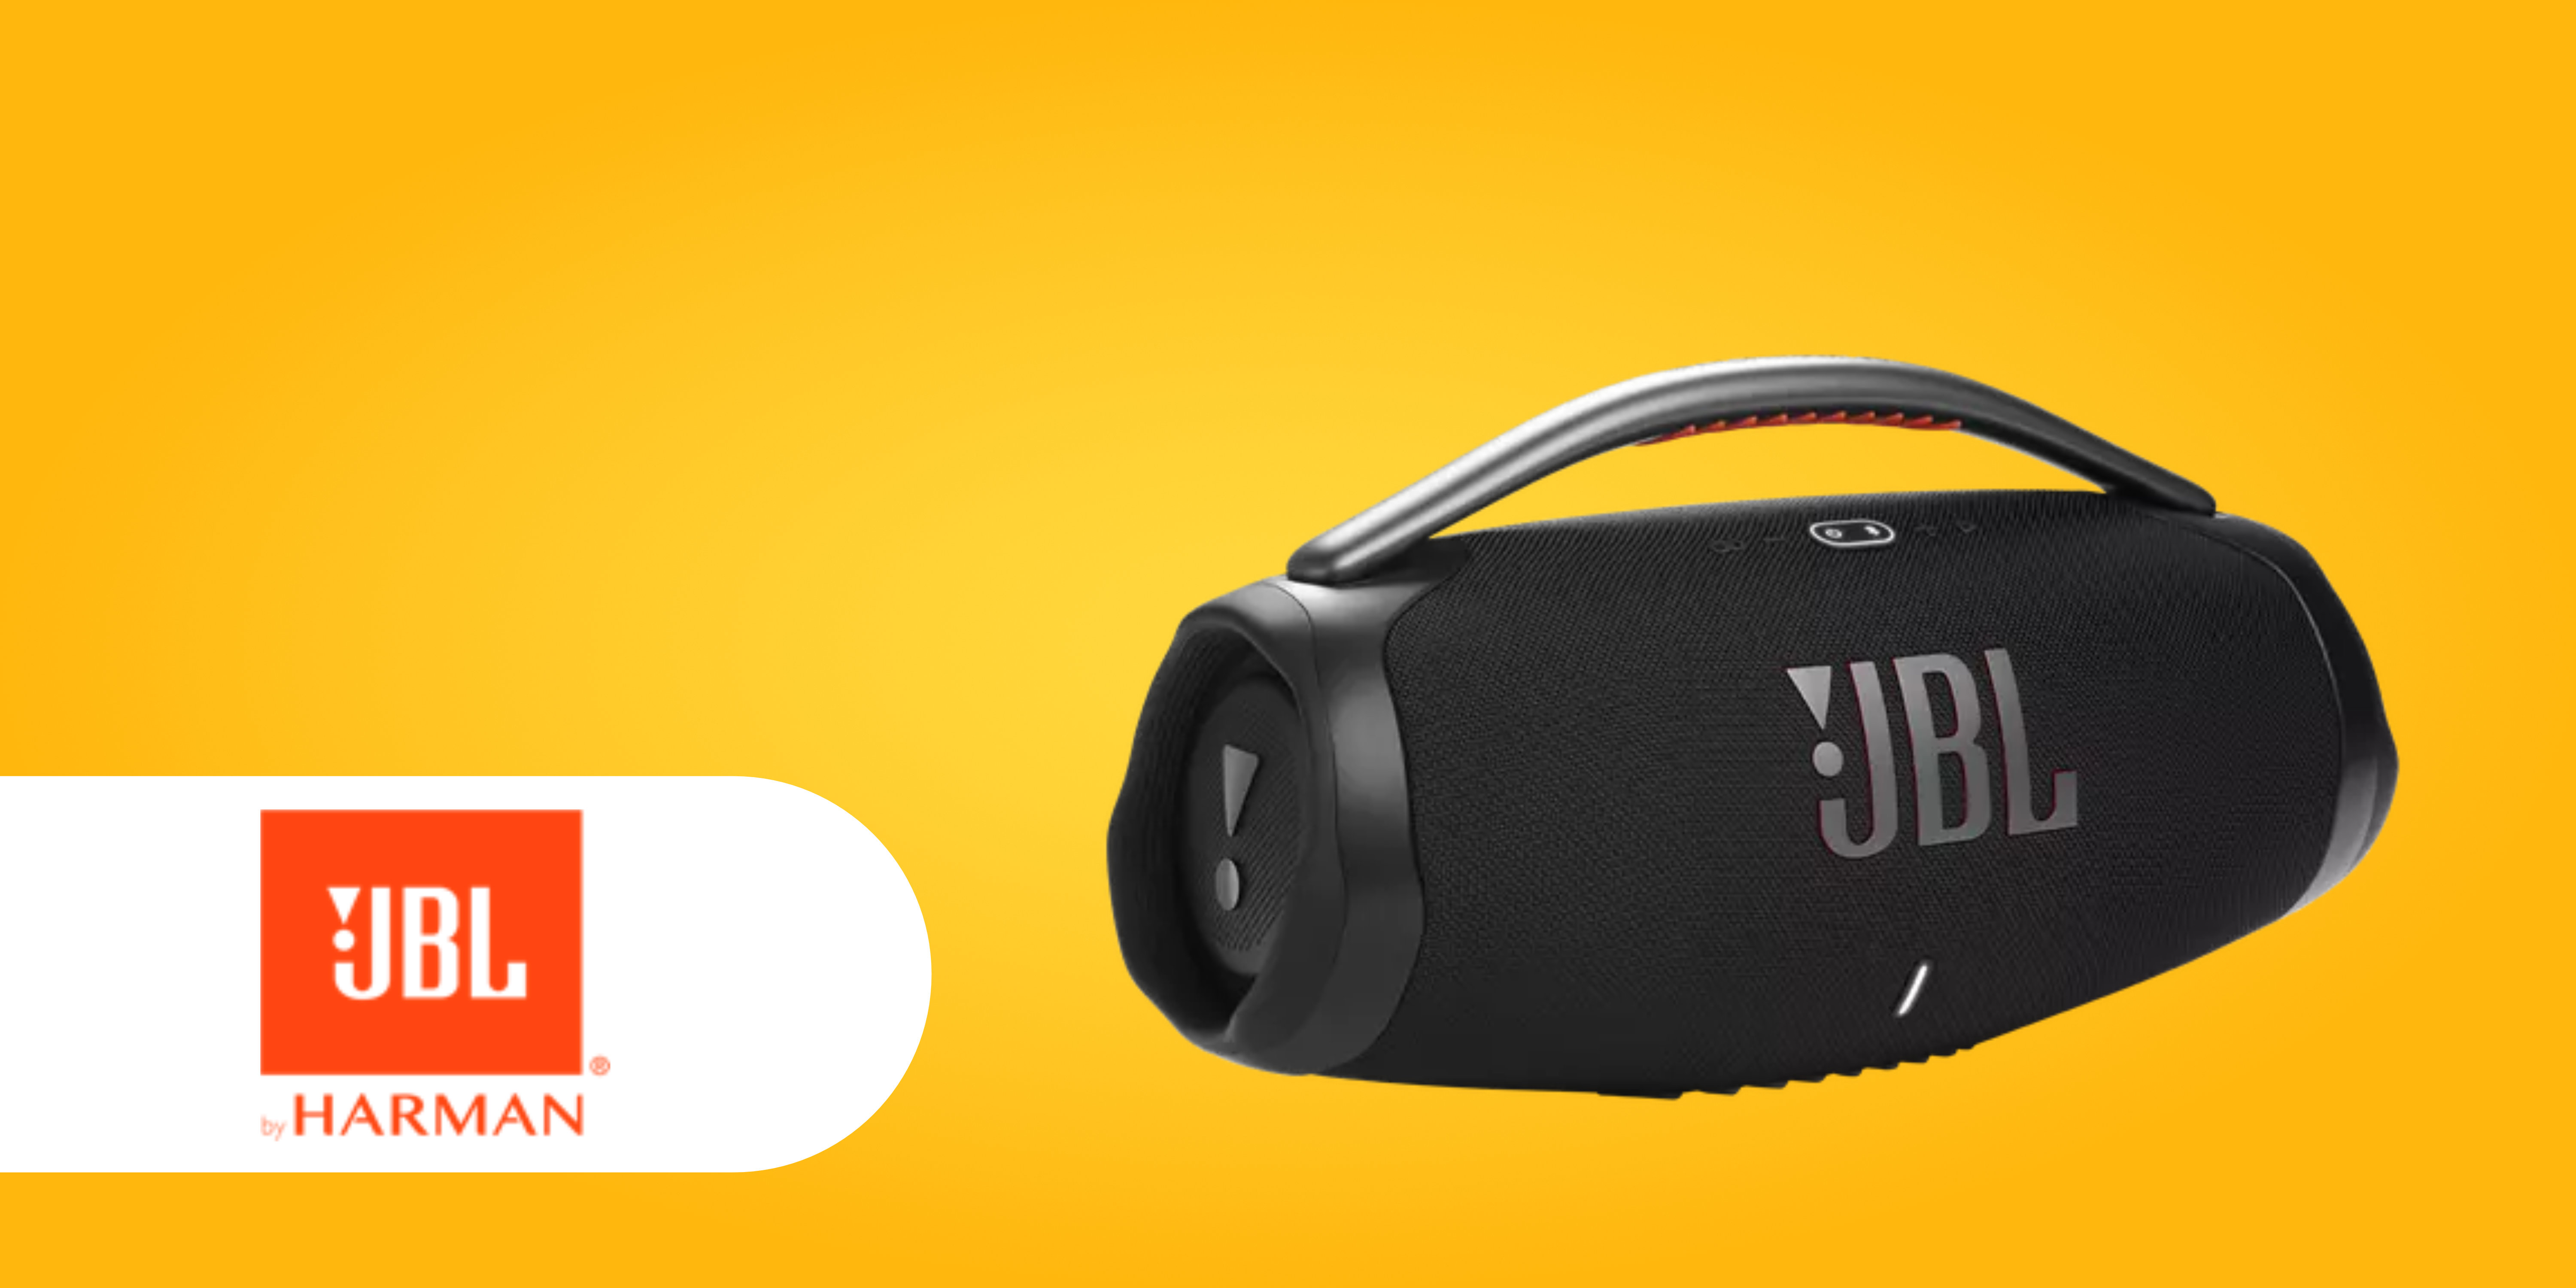 erhältlich endlich WLAN: Neue JBL 3 mit Boombox JBL-Speaker Wi-Fi